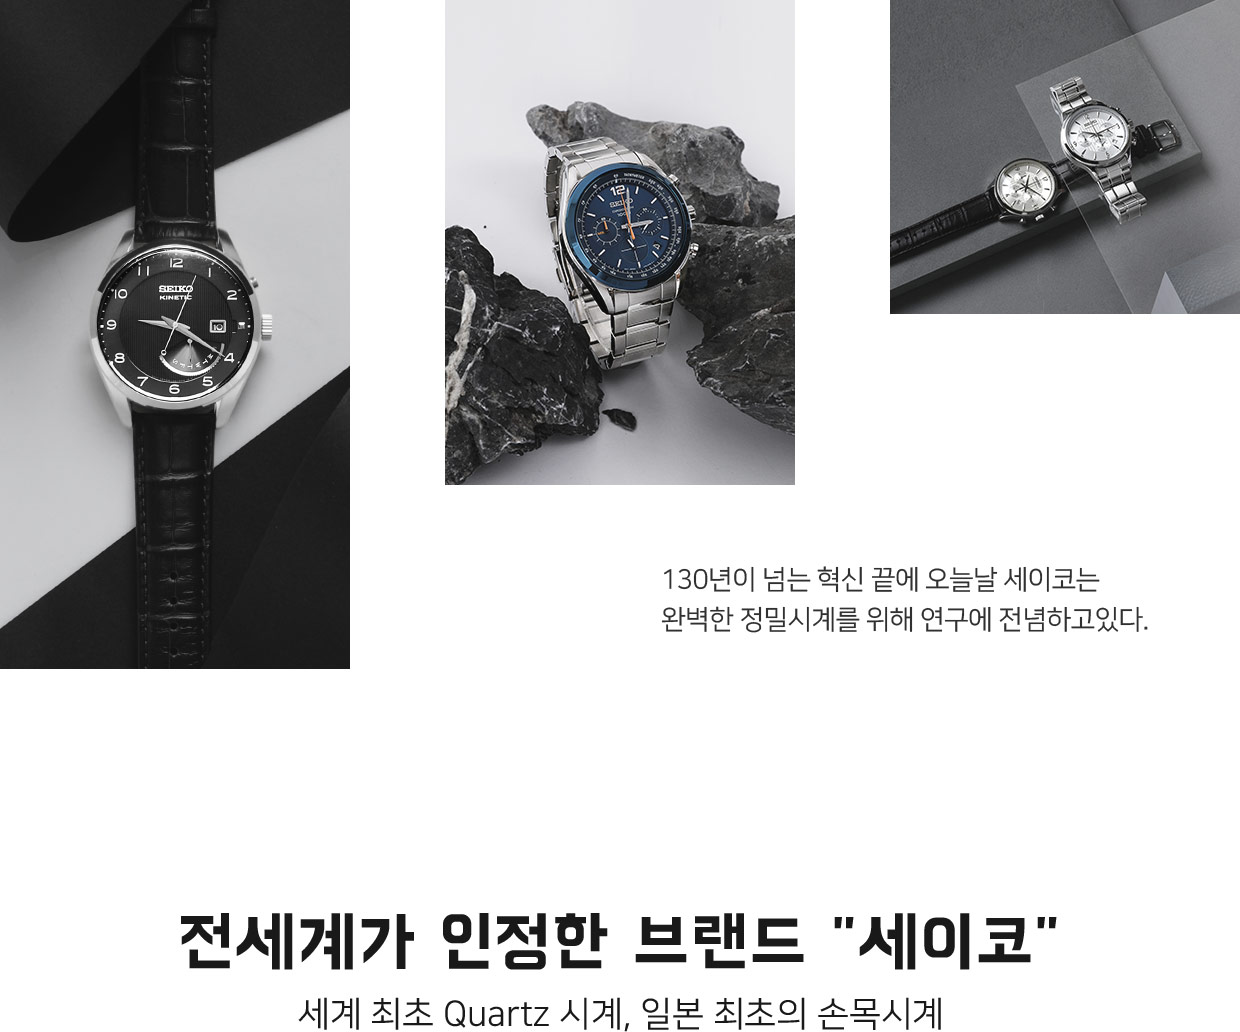 전 세계가 인정한 브랜드 세이코 - 세계 최초 Quartz 시계, 일본 최초의 손목시계